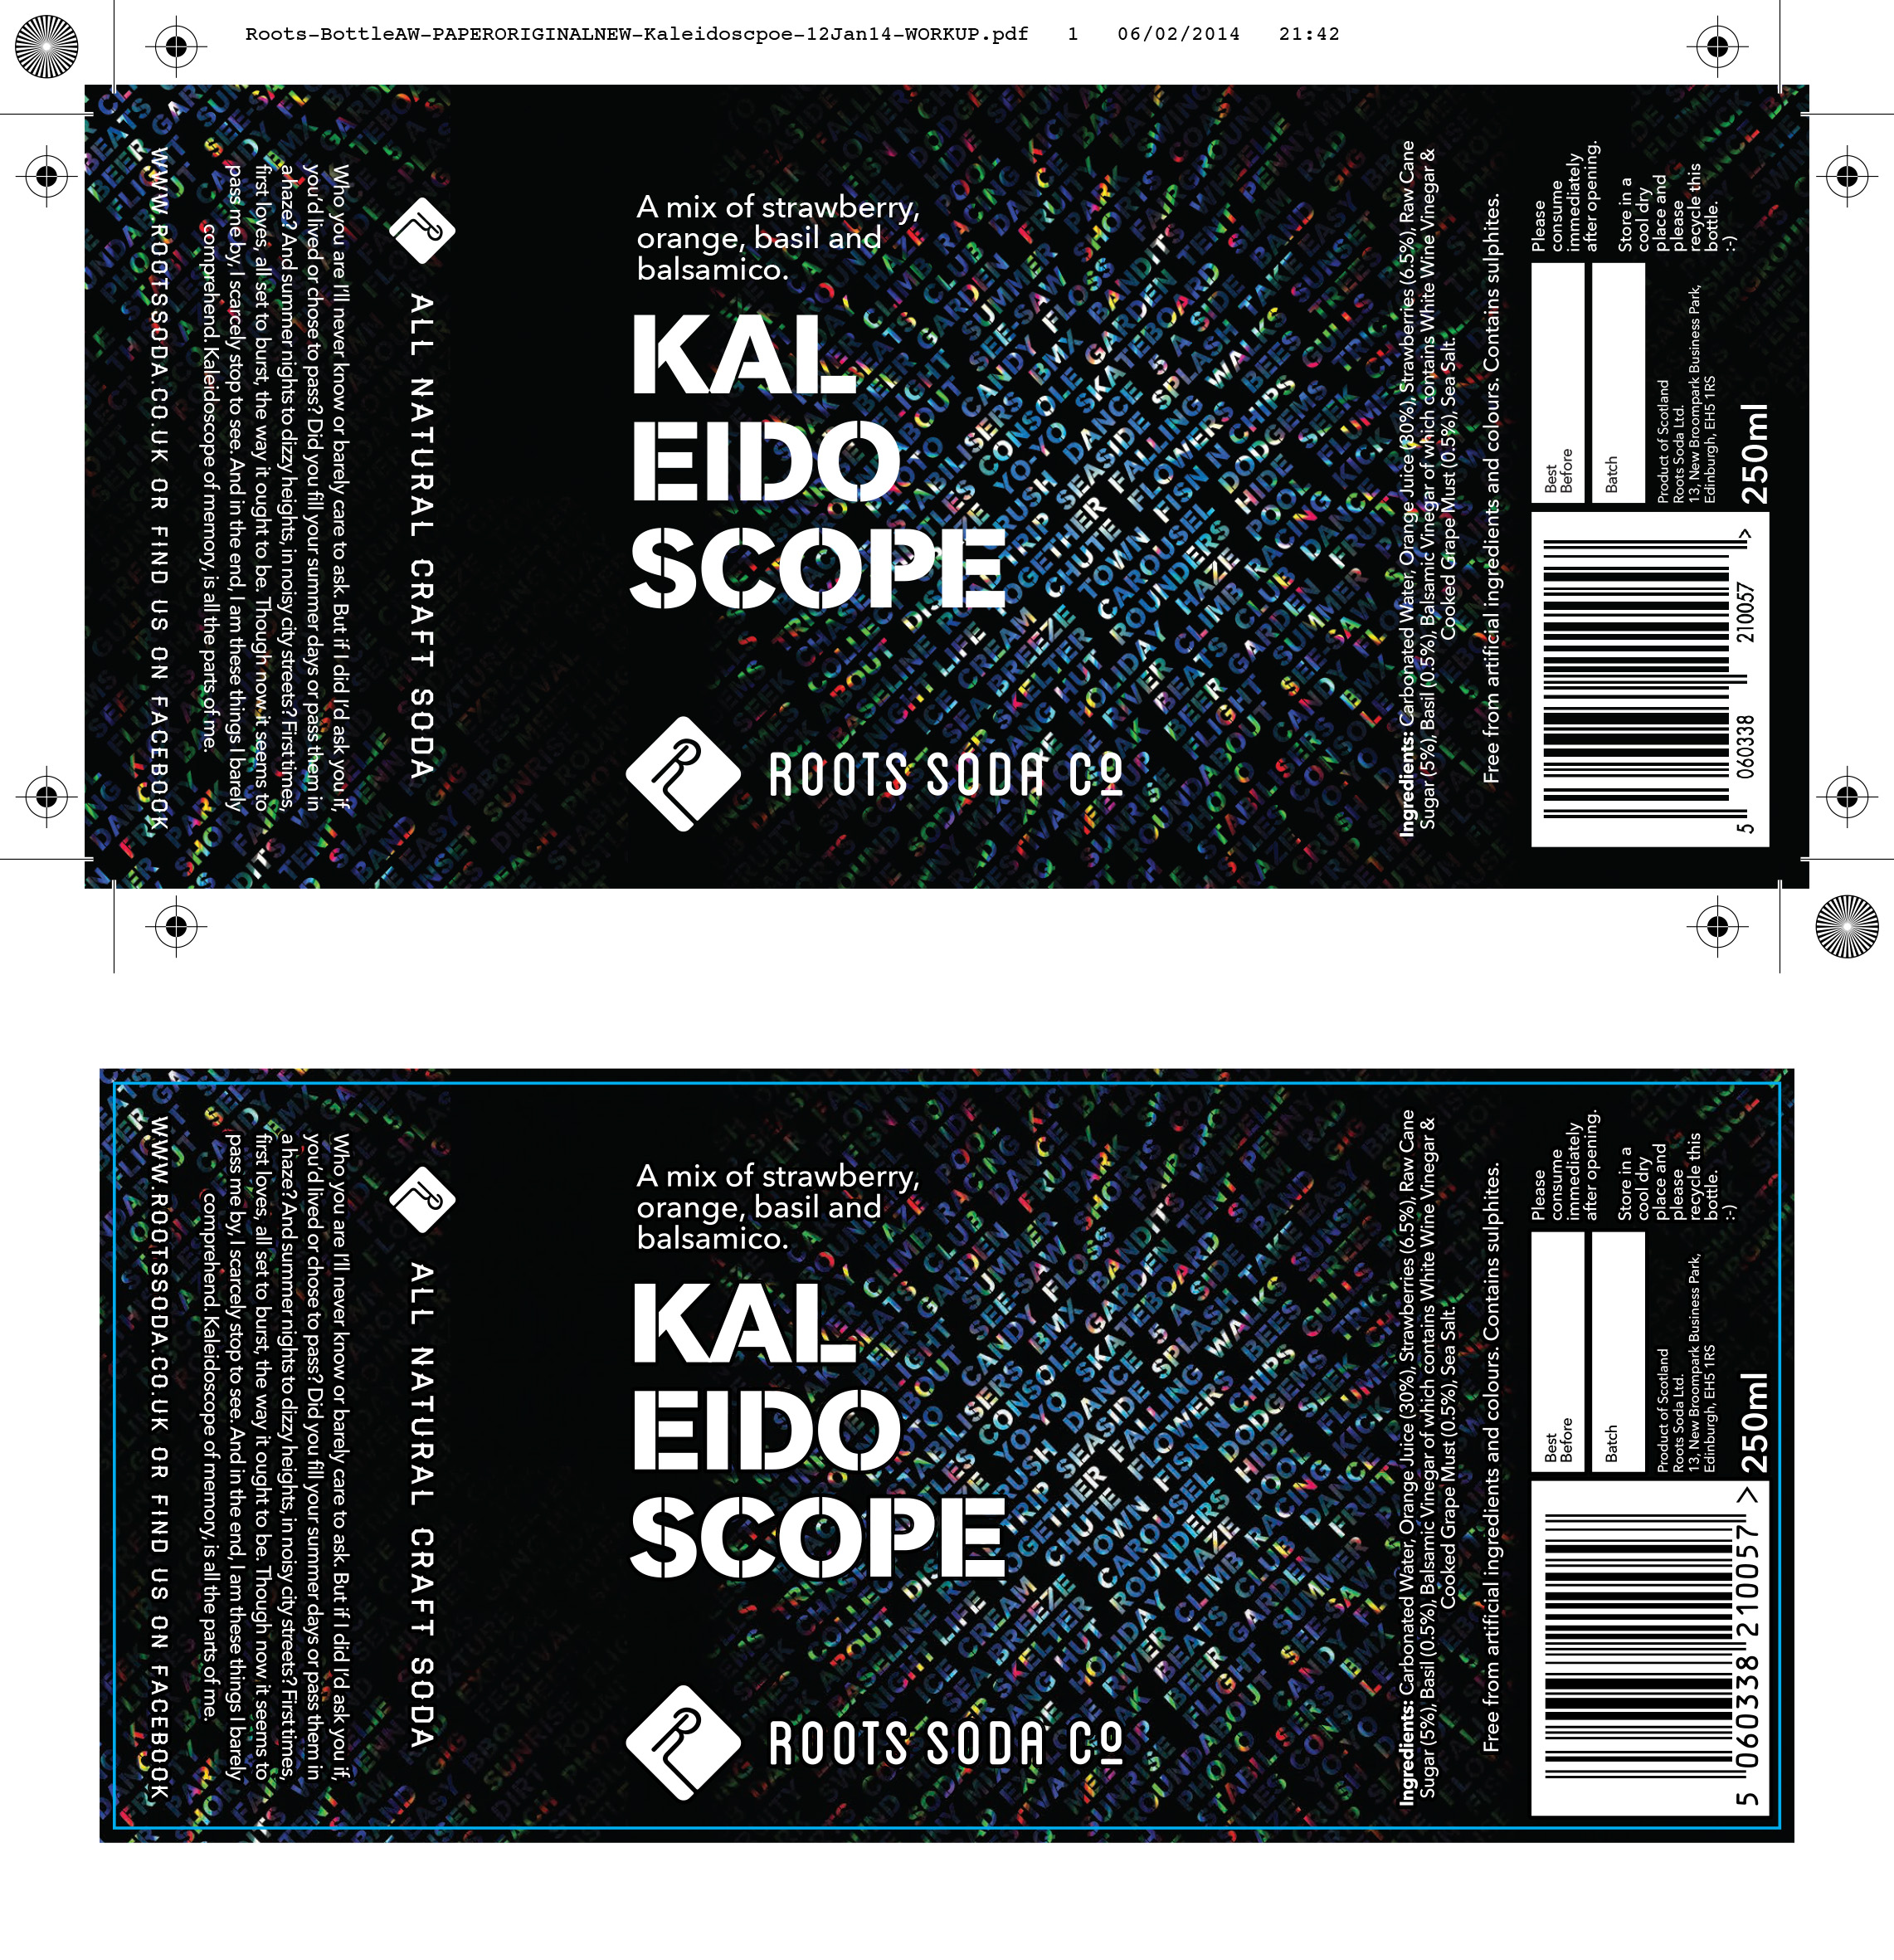 Kaleidoscope label comparison.